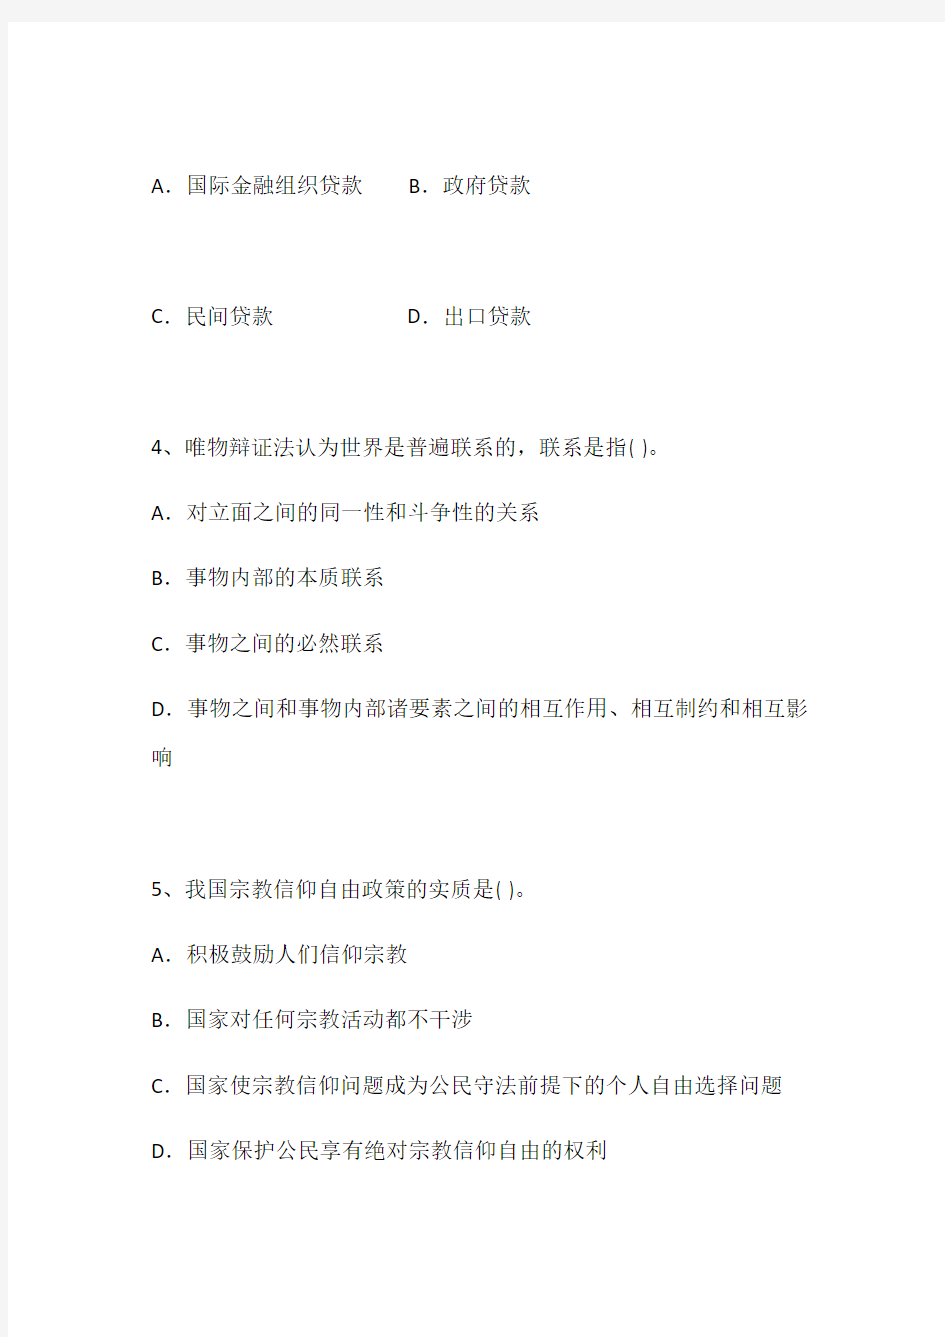 河北省副科级领导干部公开选拔考试试题